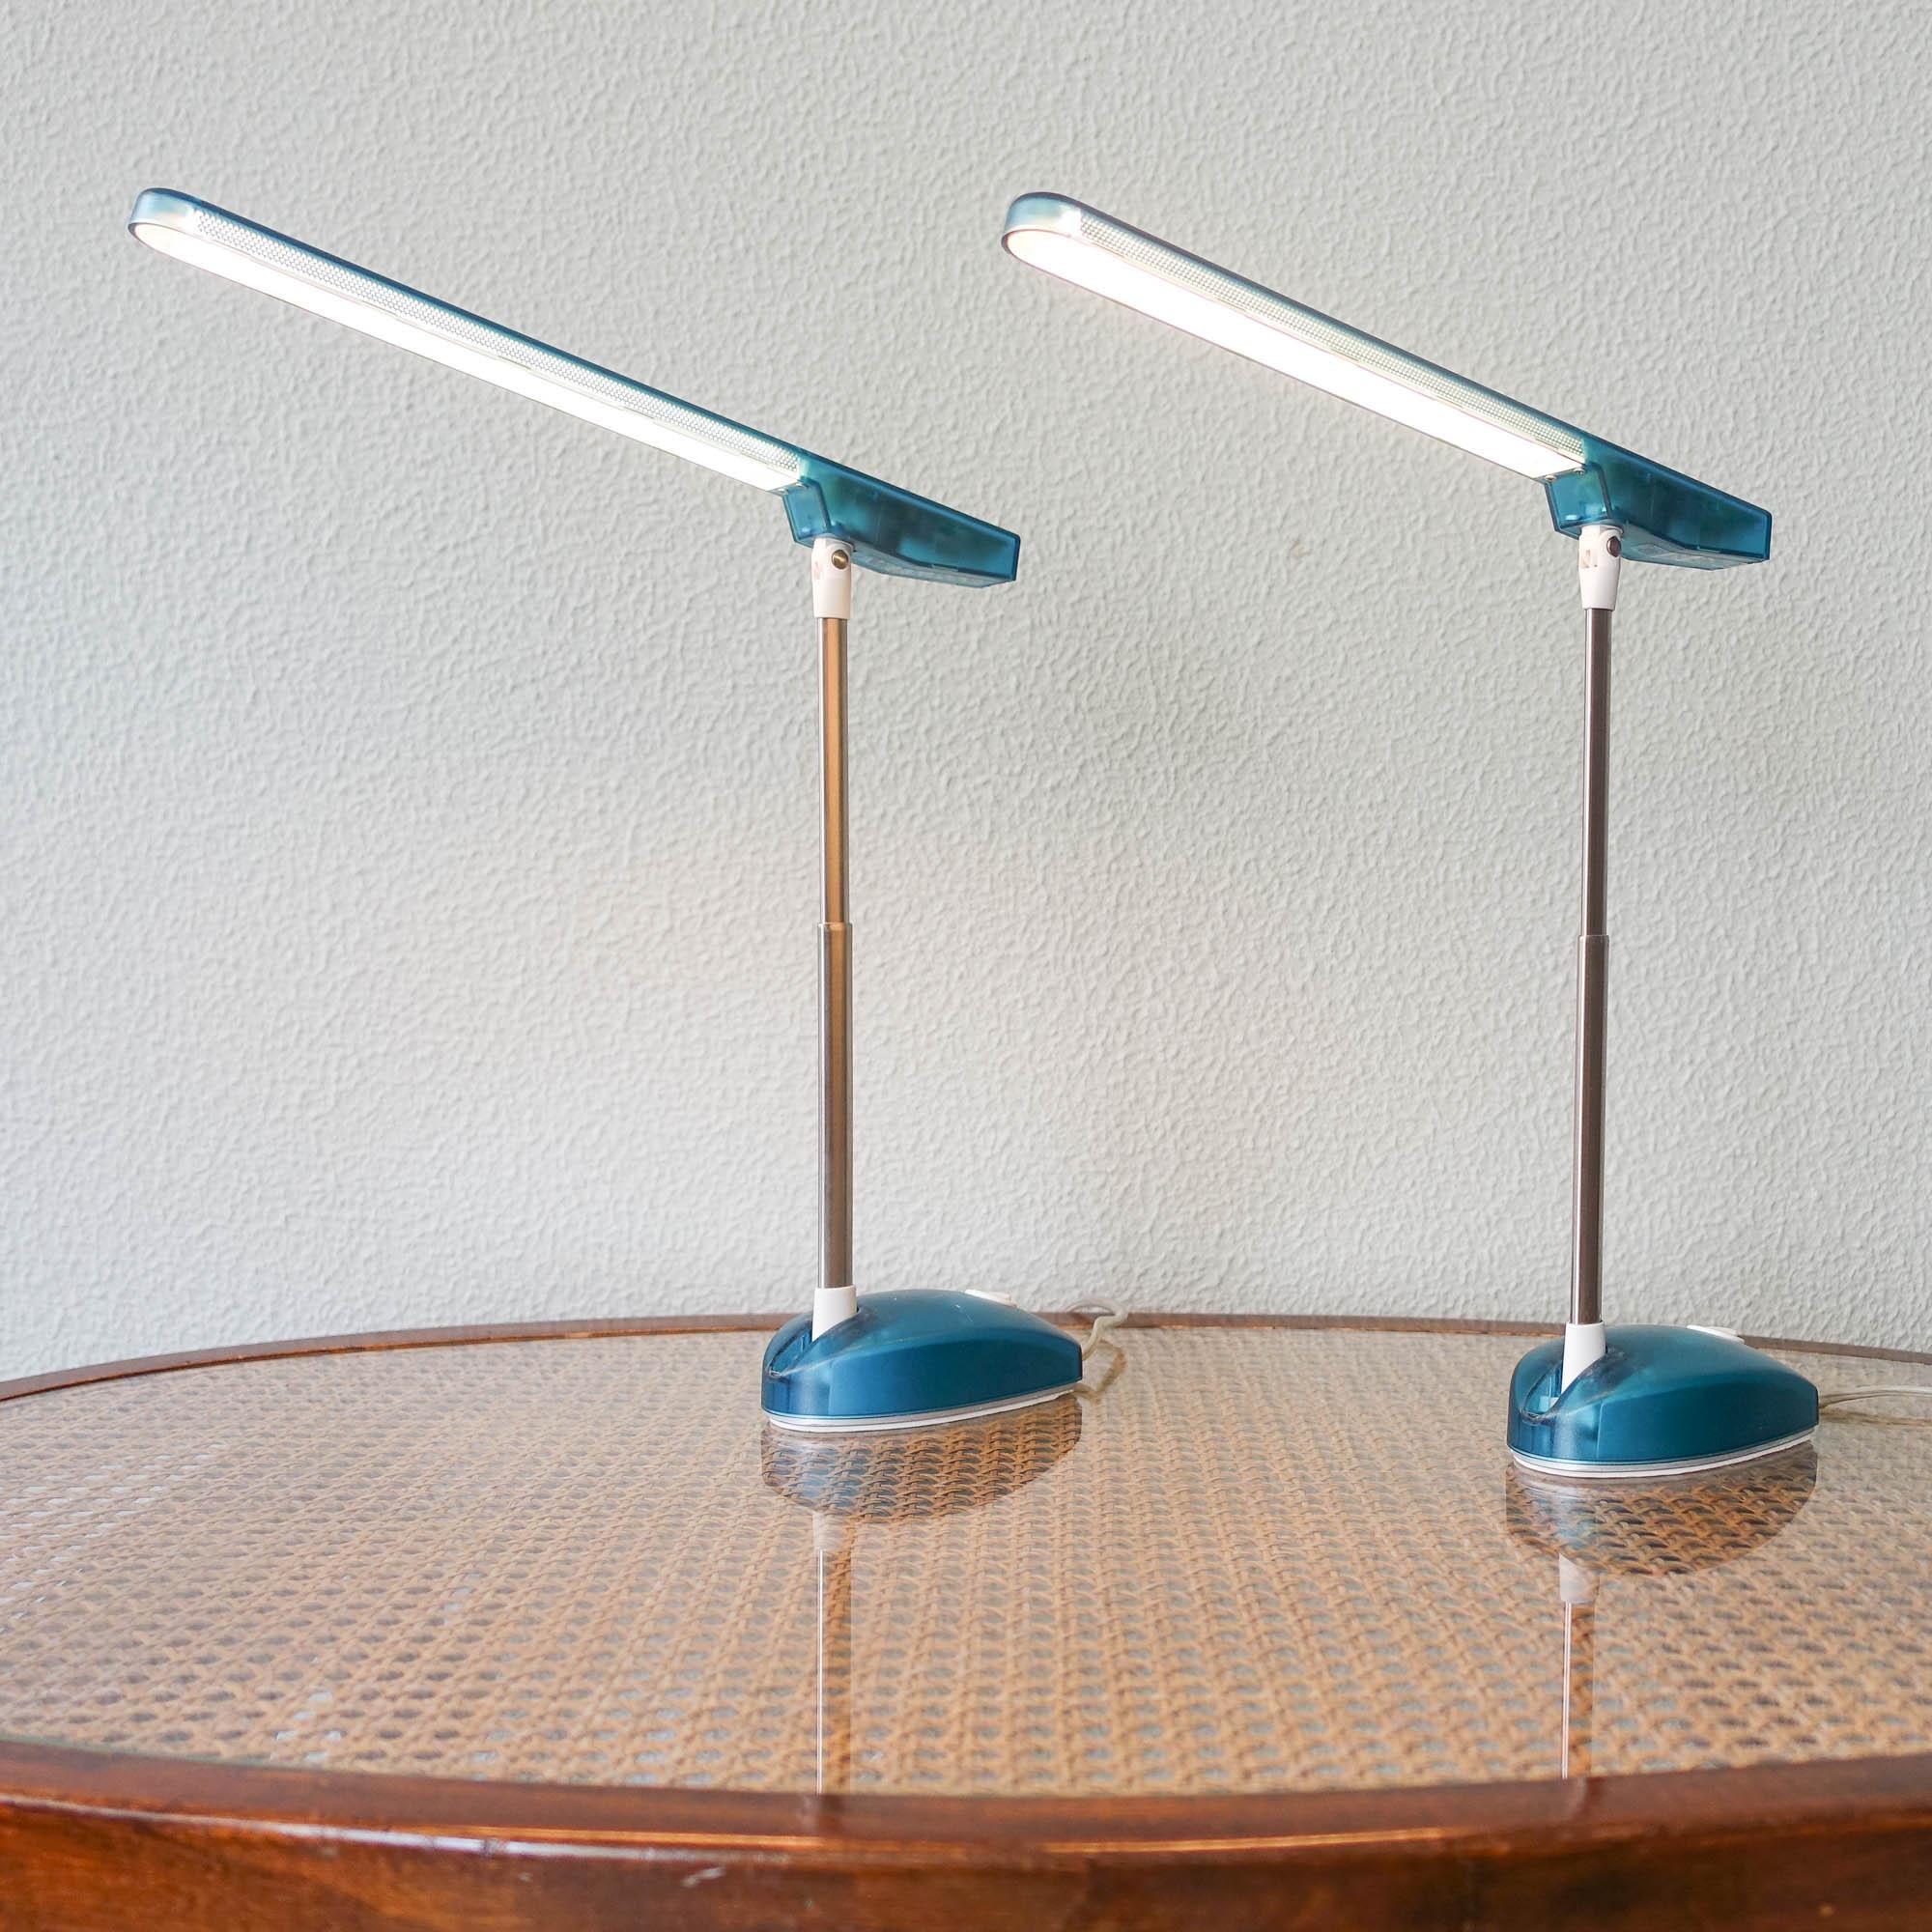 Cette paire de lampes de table, modèle Microlight, a été conçue par Ernesto Gismondi pour Artemide, dans les années 1990. Il s'agit d'un design très technique des années 90. Cette lampe de table flexible est prédestinée aux postes de travail sur